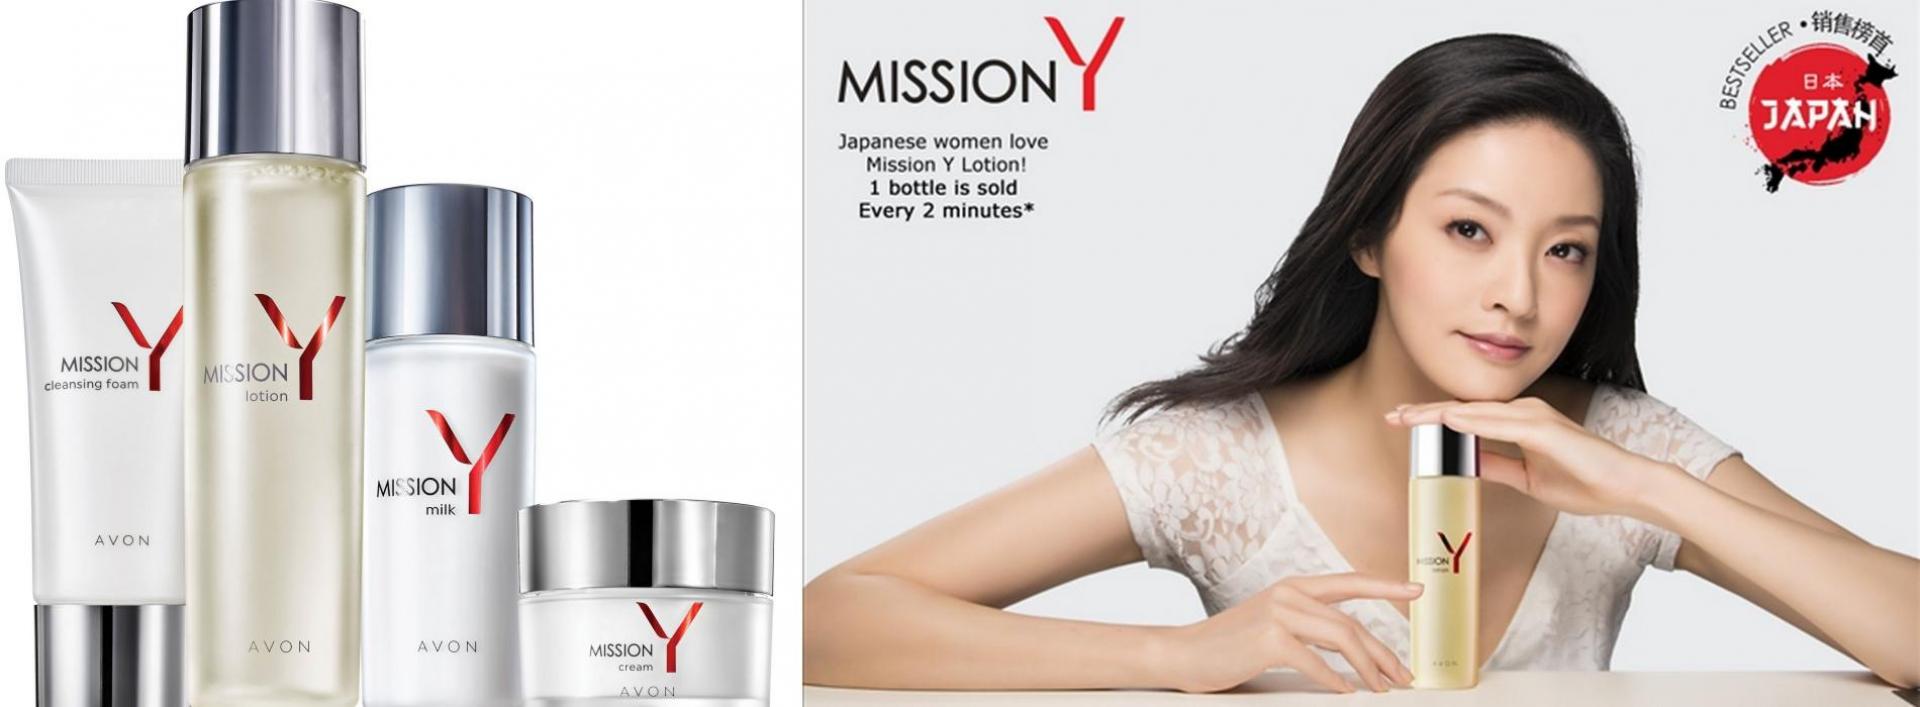 Masayuki Ueda, AVON JAPAN: konsumenci coraz częściej wybierają kosmetyki zorientowane przede wszystkim na rezultaty